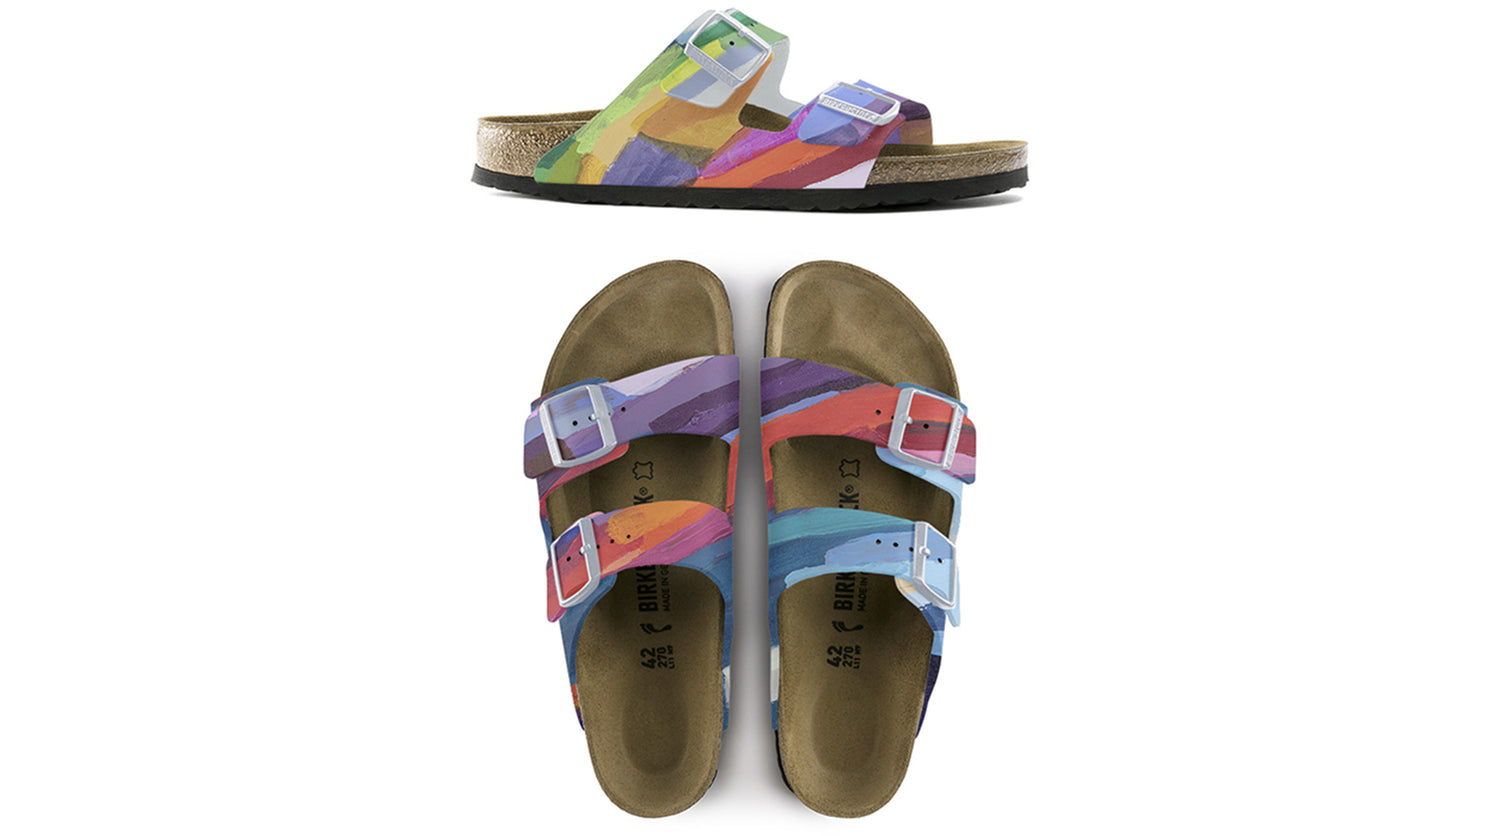 Claire Desjardins custom Birkenstock sandals – Claire Desjardins